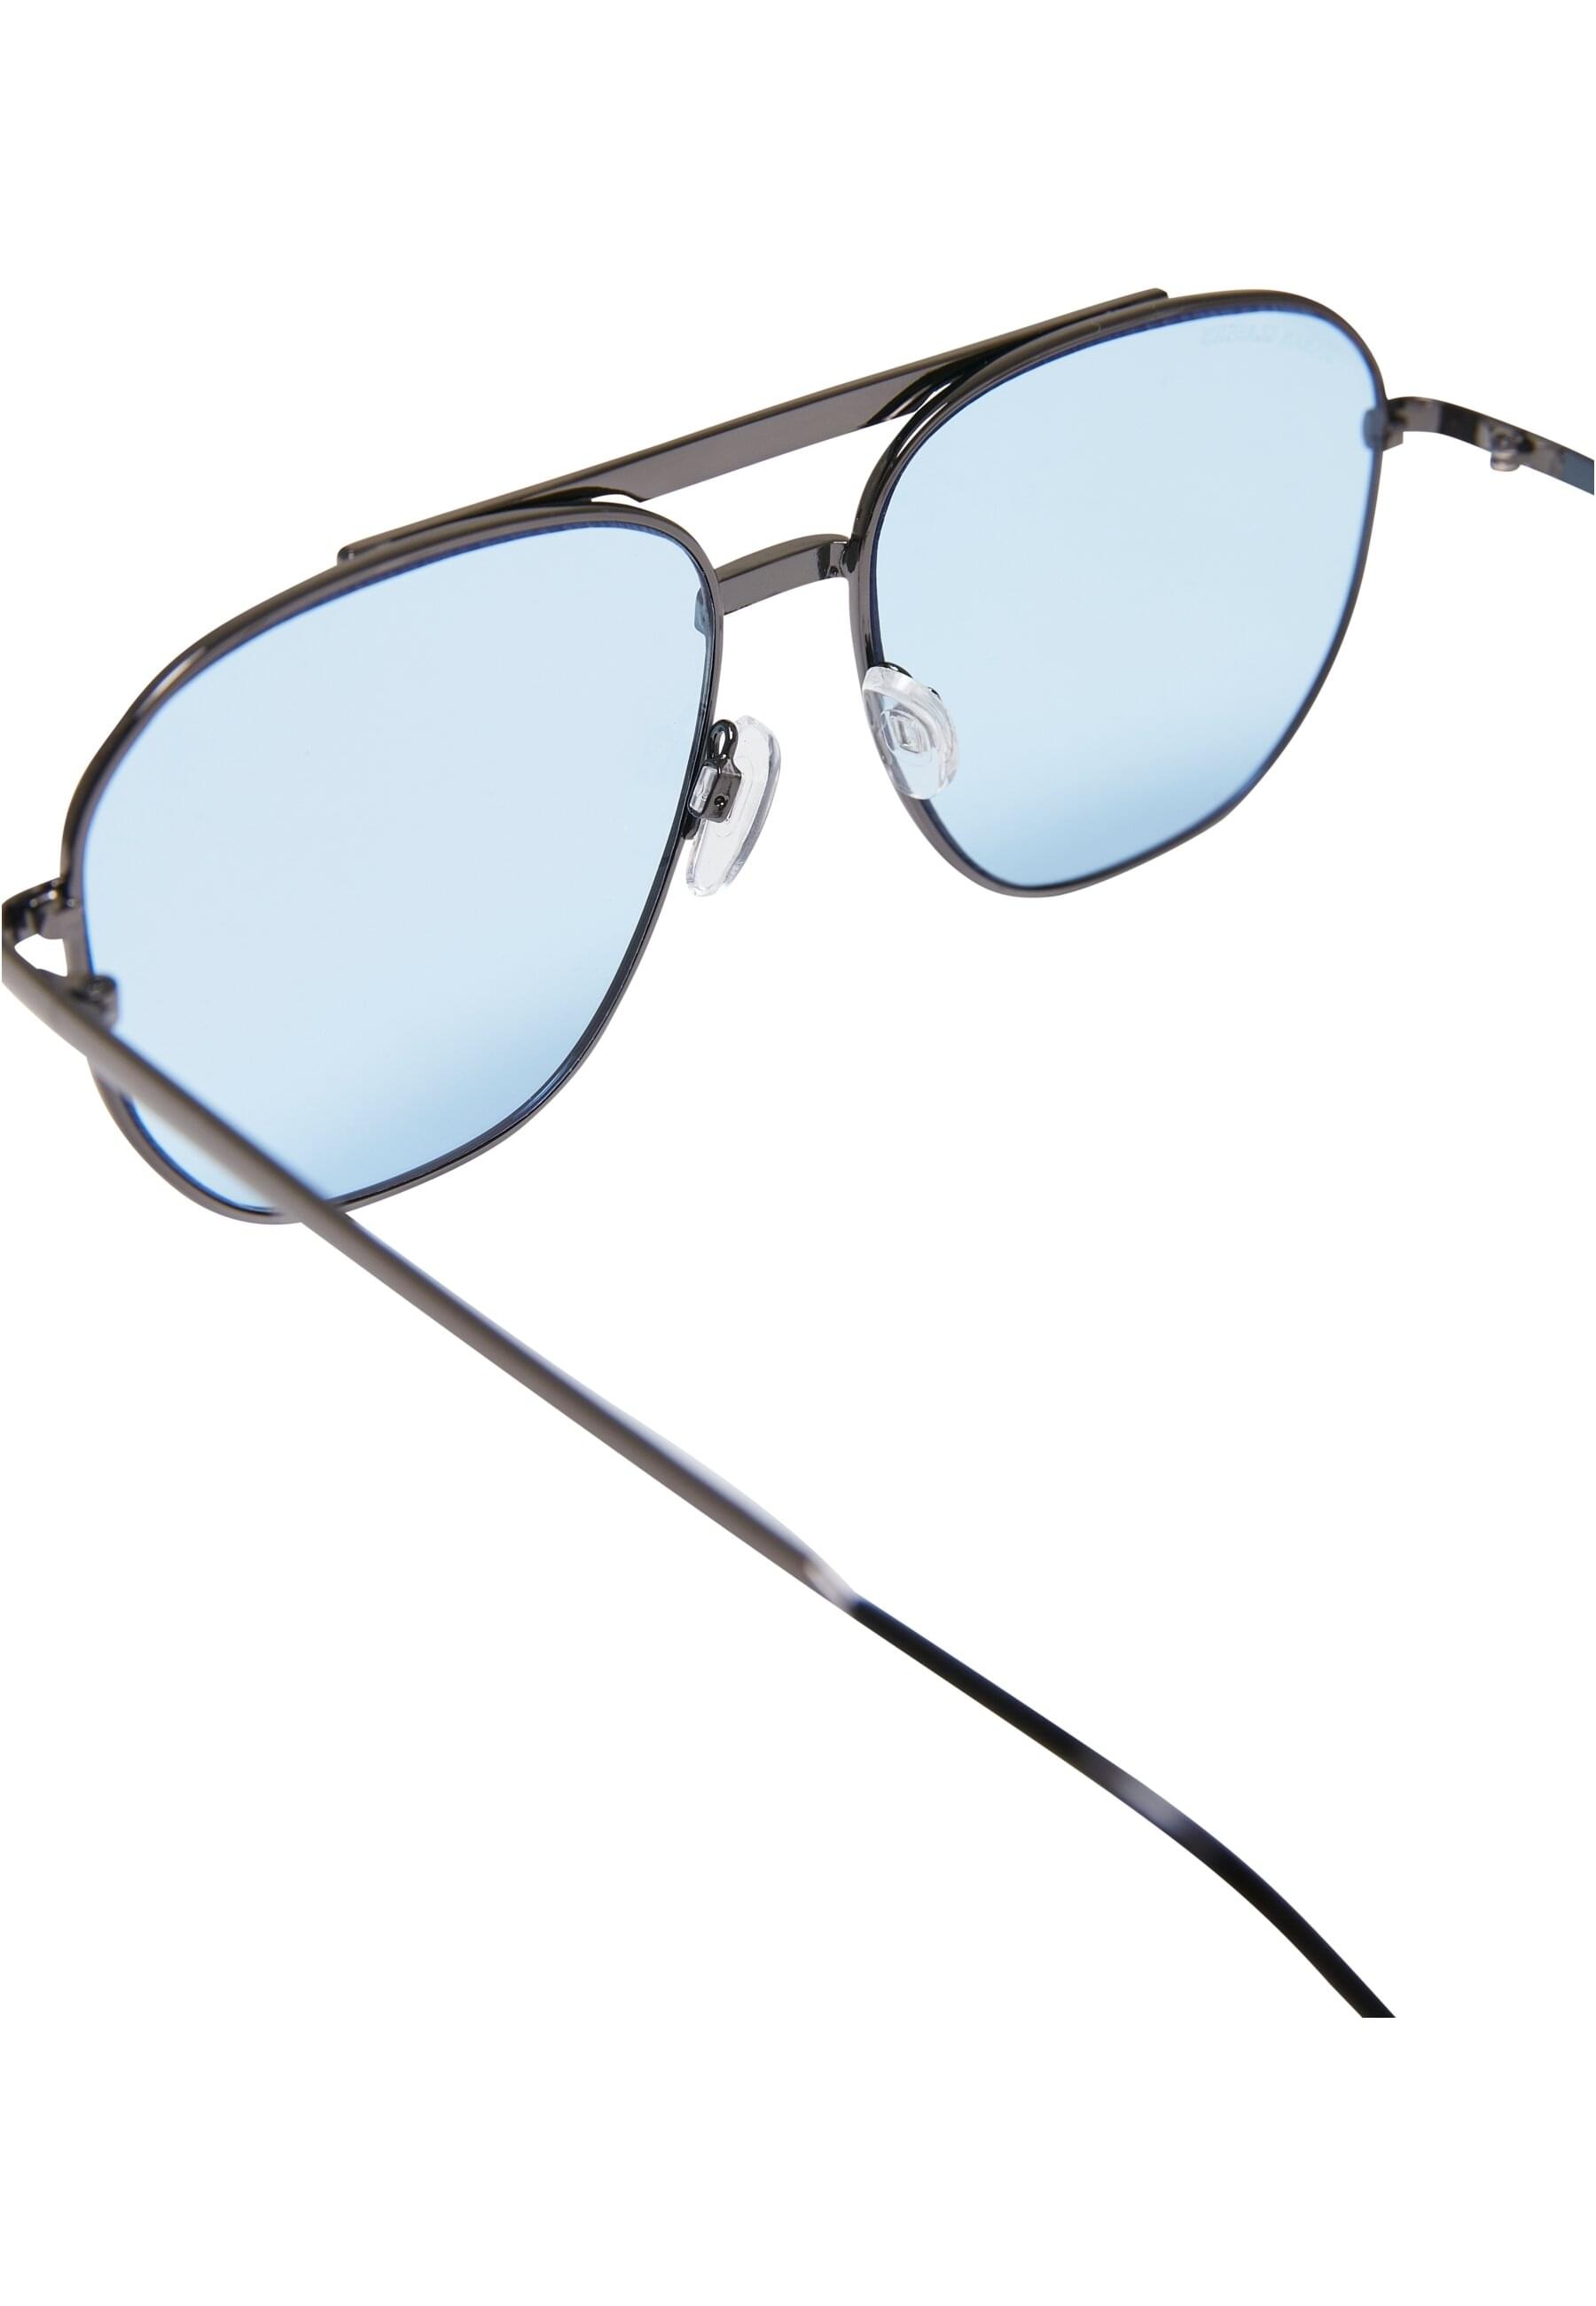 CLASSICS »Unisex URBAN Manila« | Sunglasses BAUR bestellen für Sonnenbrille